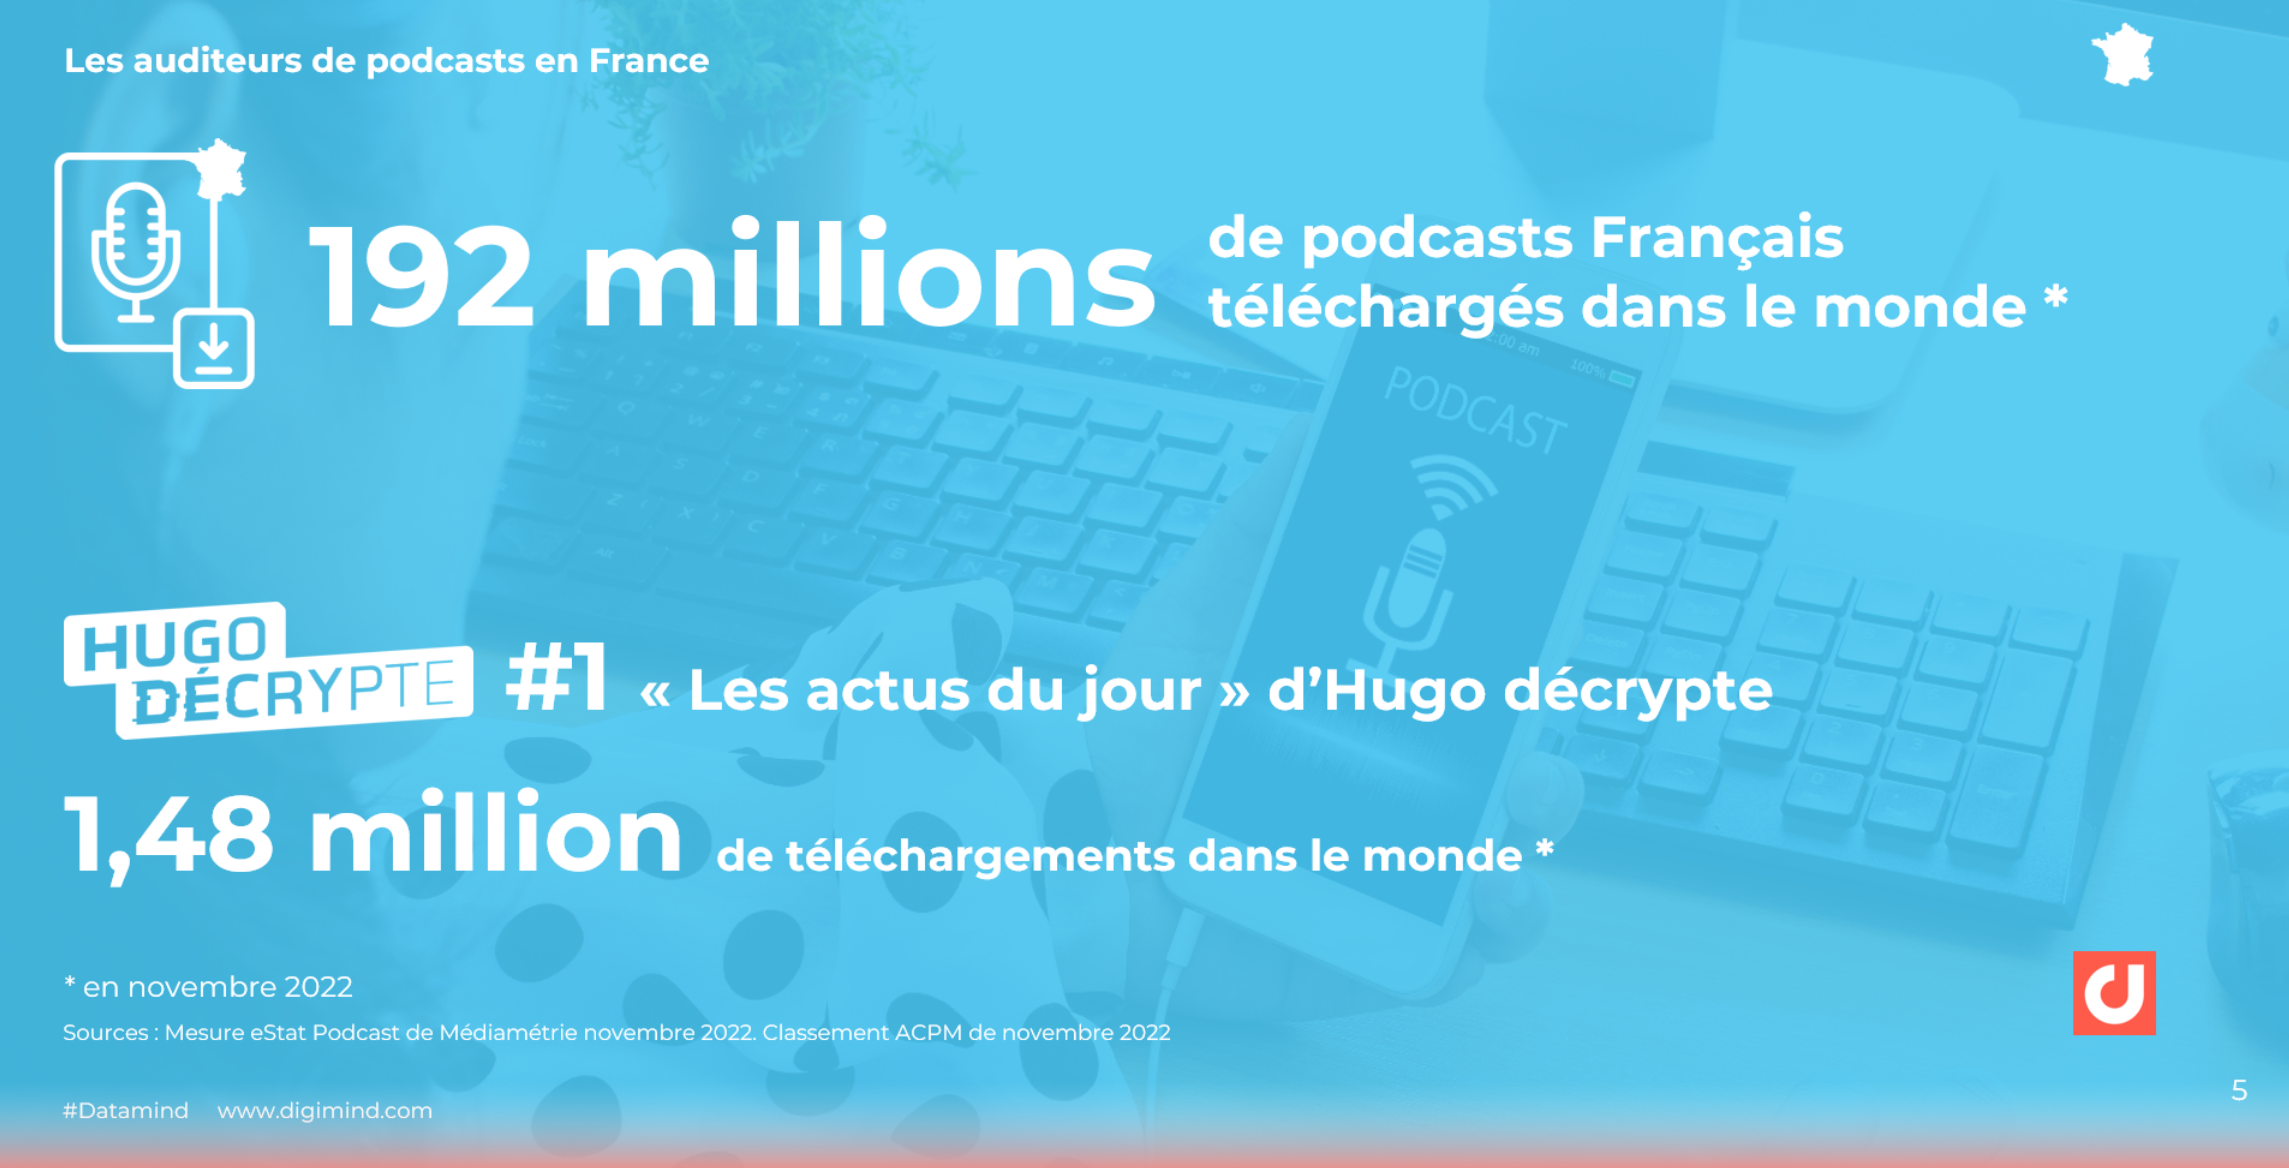 Les téléchargements dans le monde. Le podcast le plus téléchargé en France.